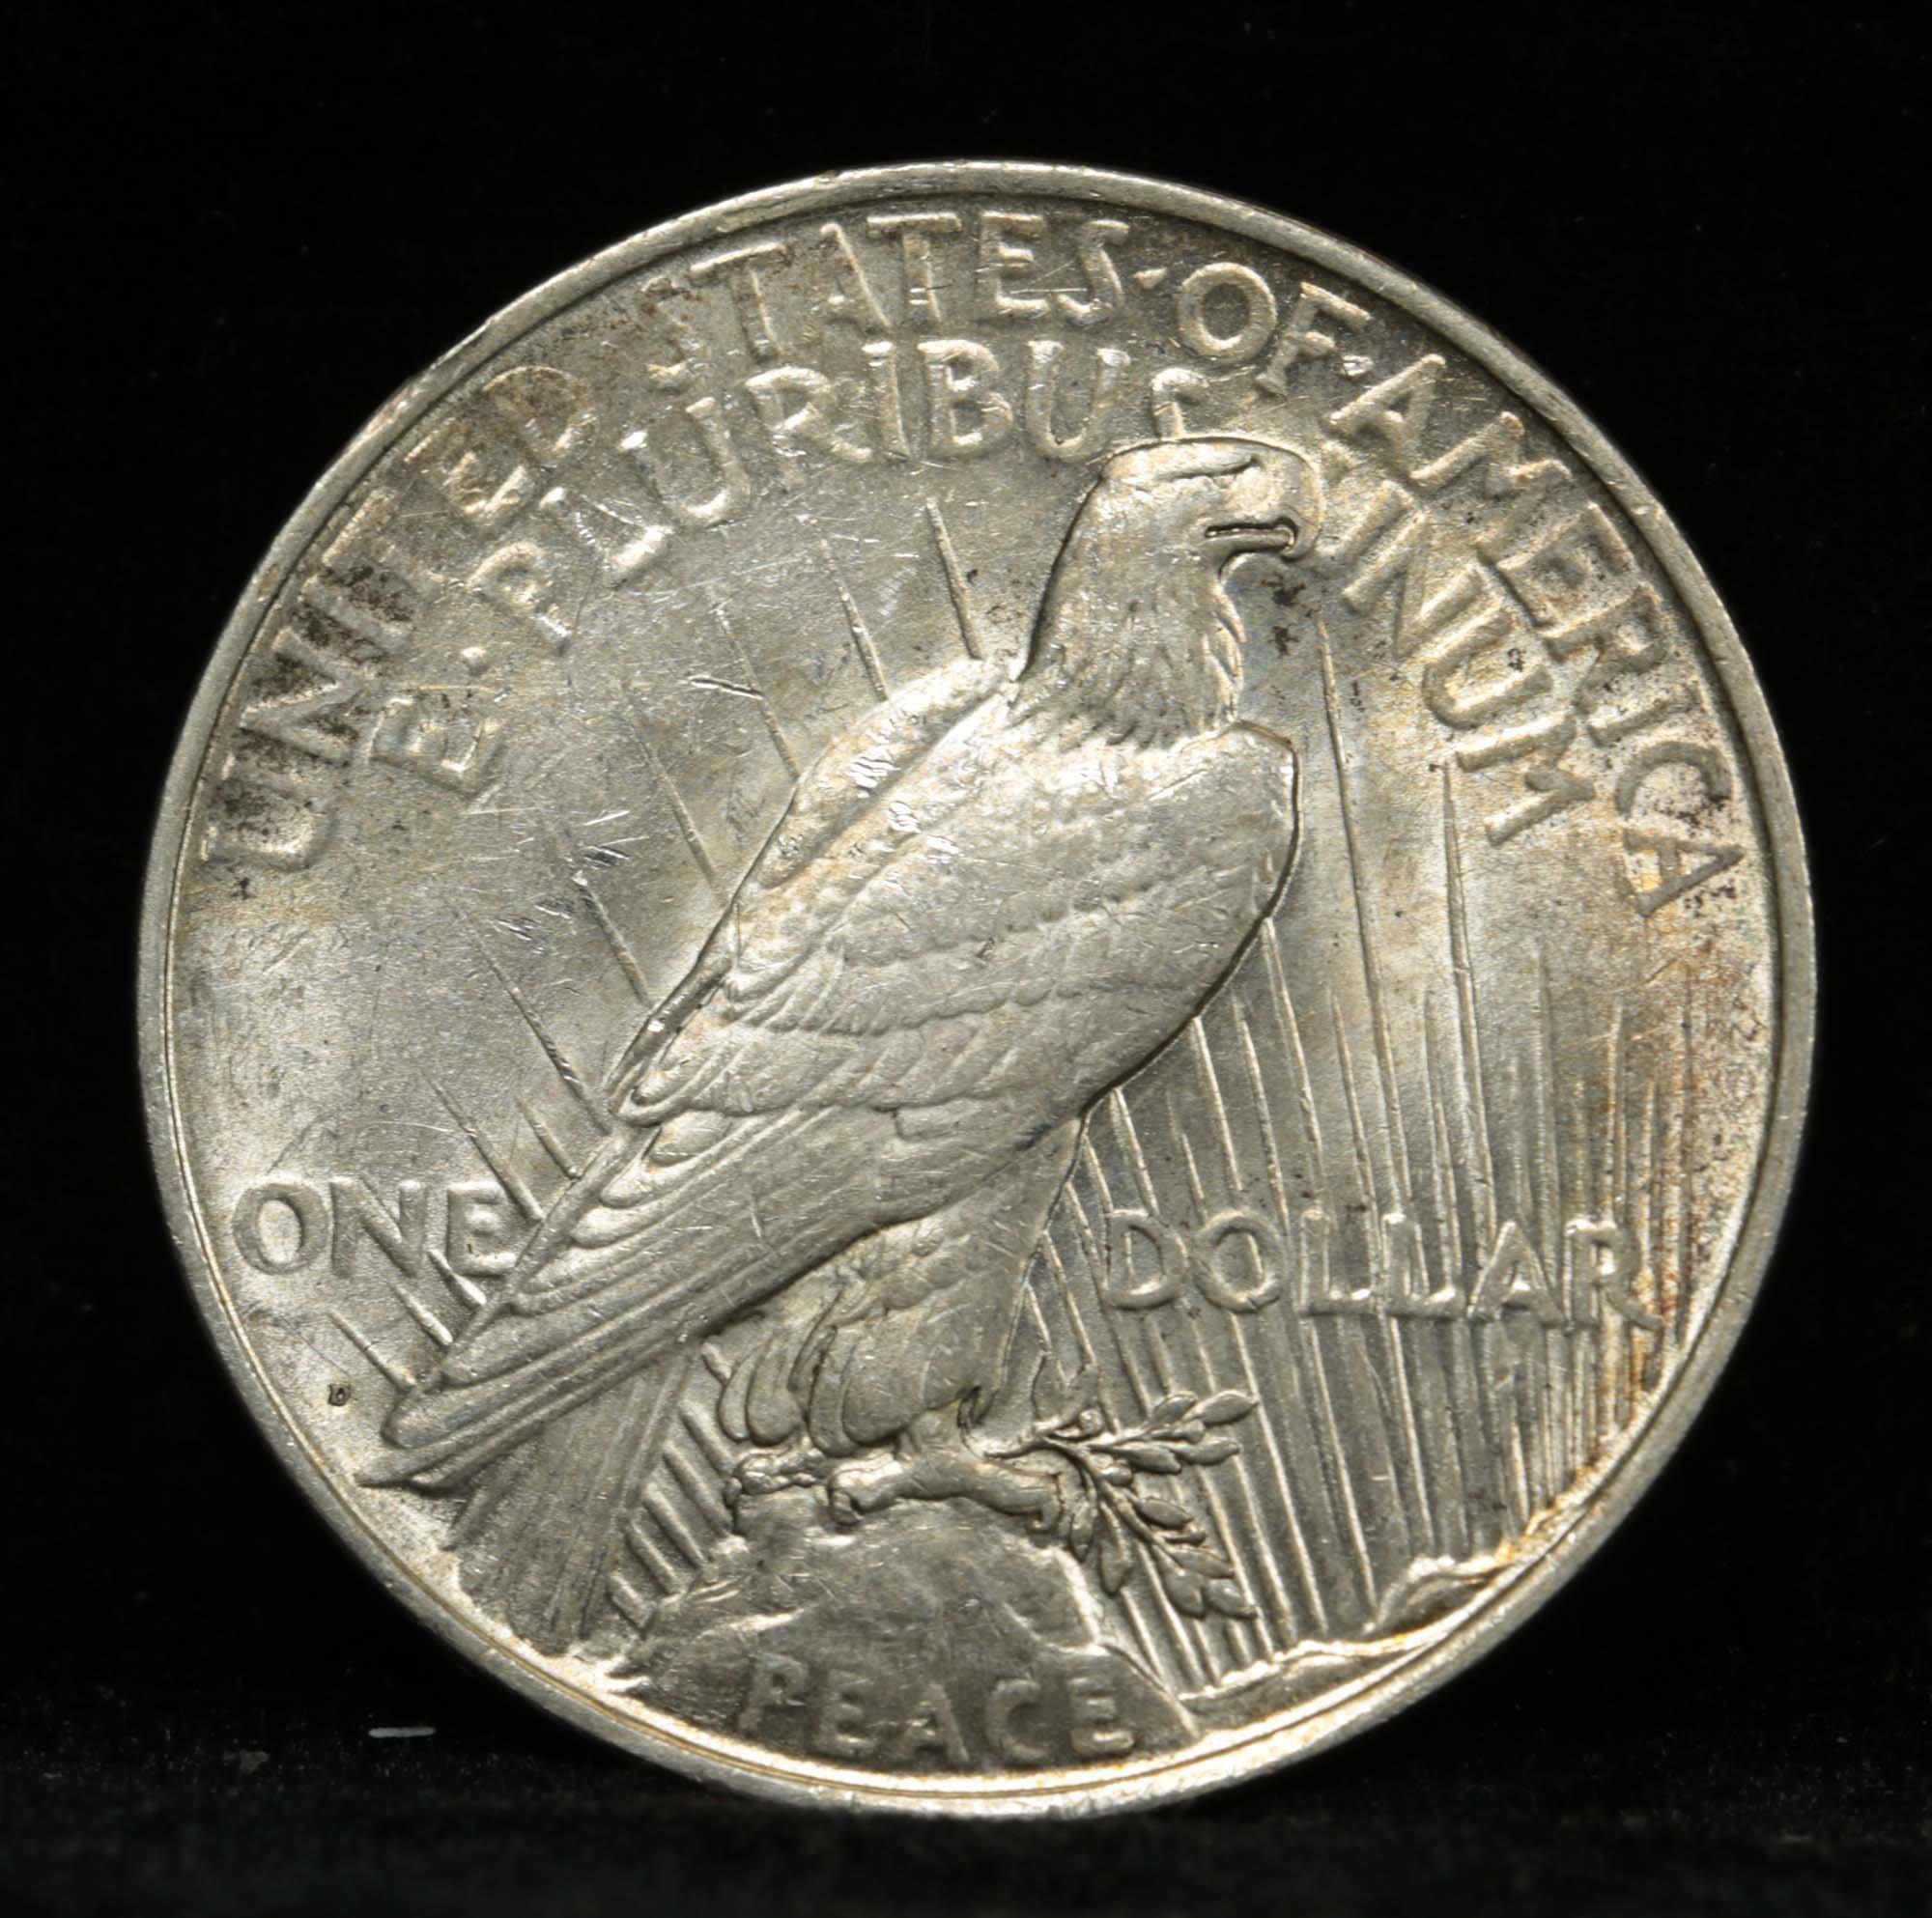 ***Auction Highlight*** 1927-d Peace Dollar $1 Graded Choice+ Unc by USCG (fc)